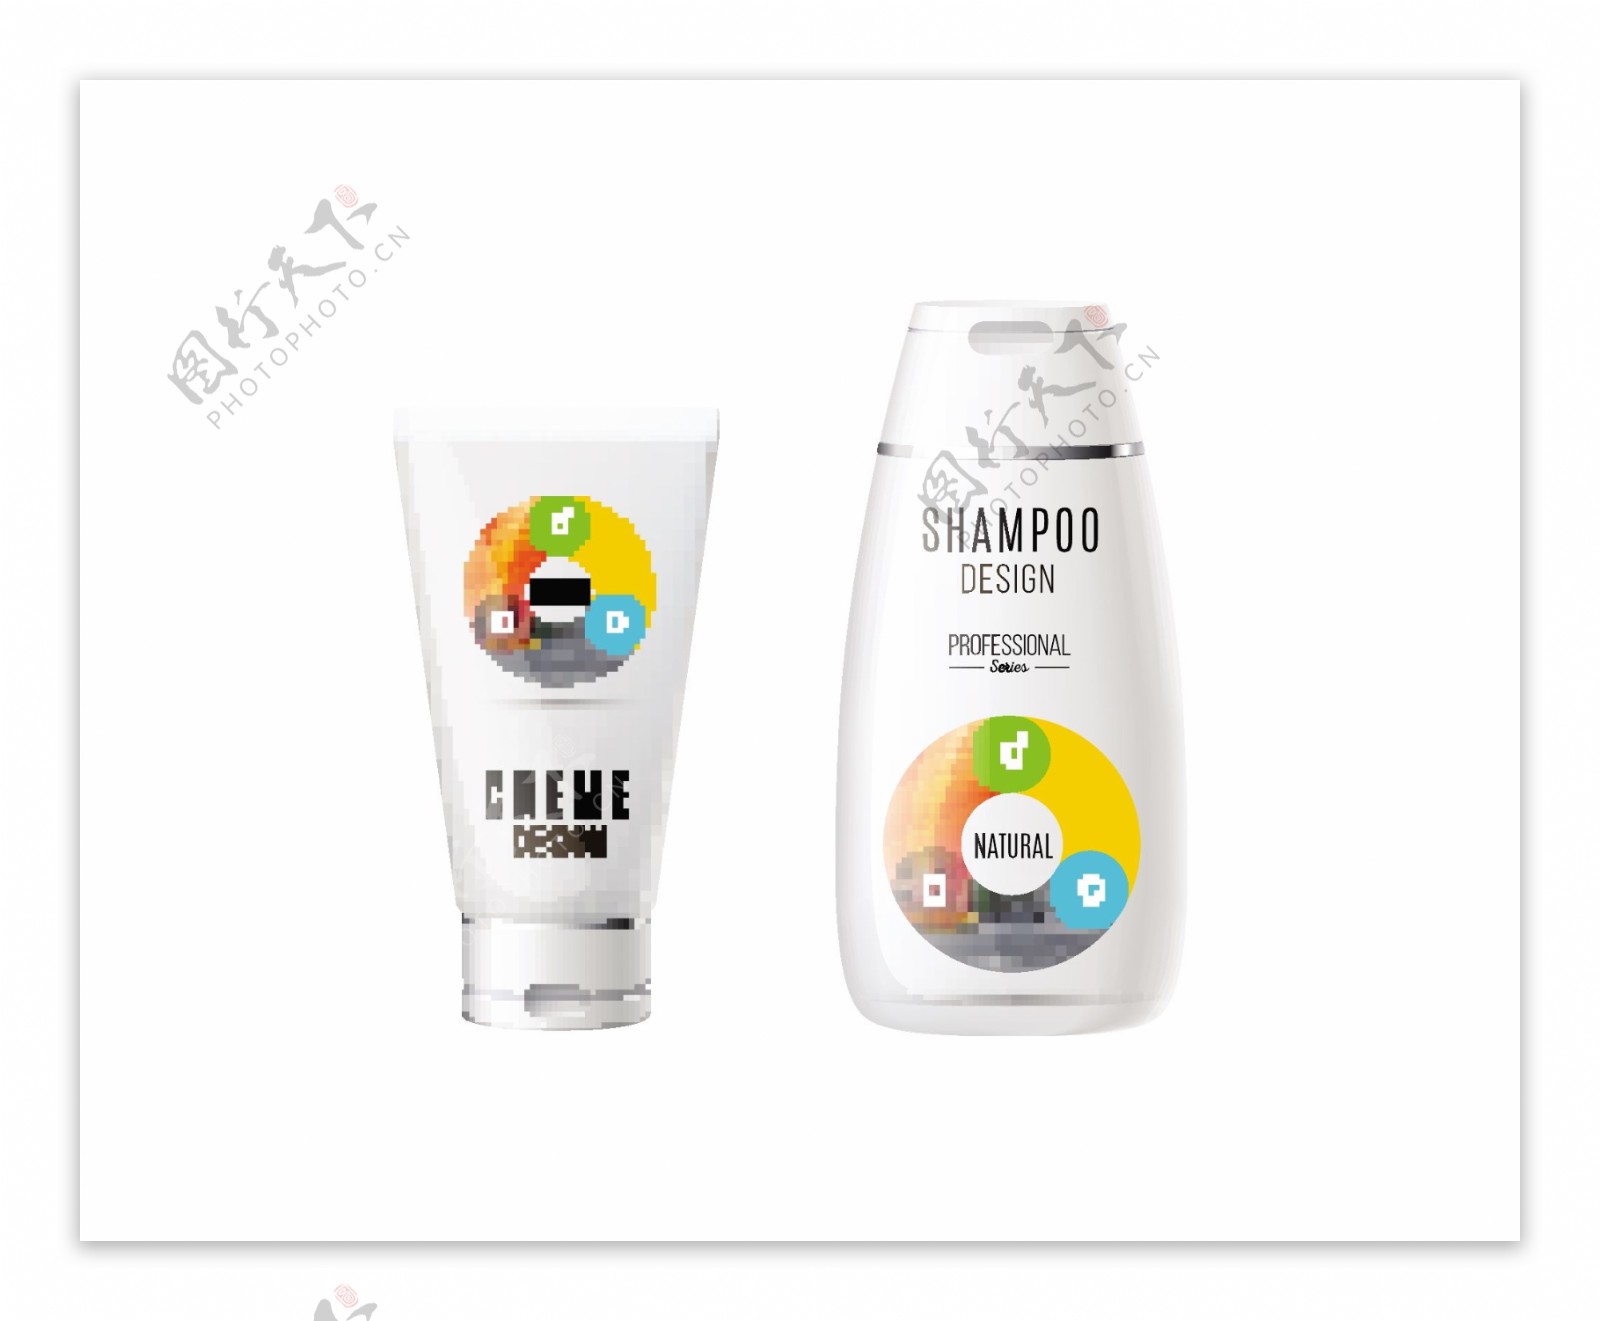 洗发水化妆品品牌设计效果图矢量素材下载